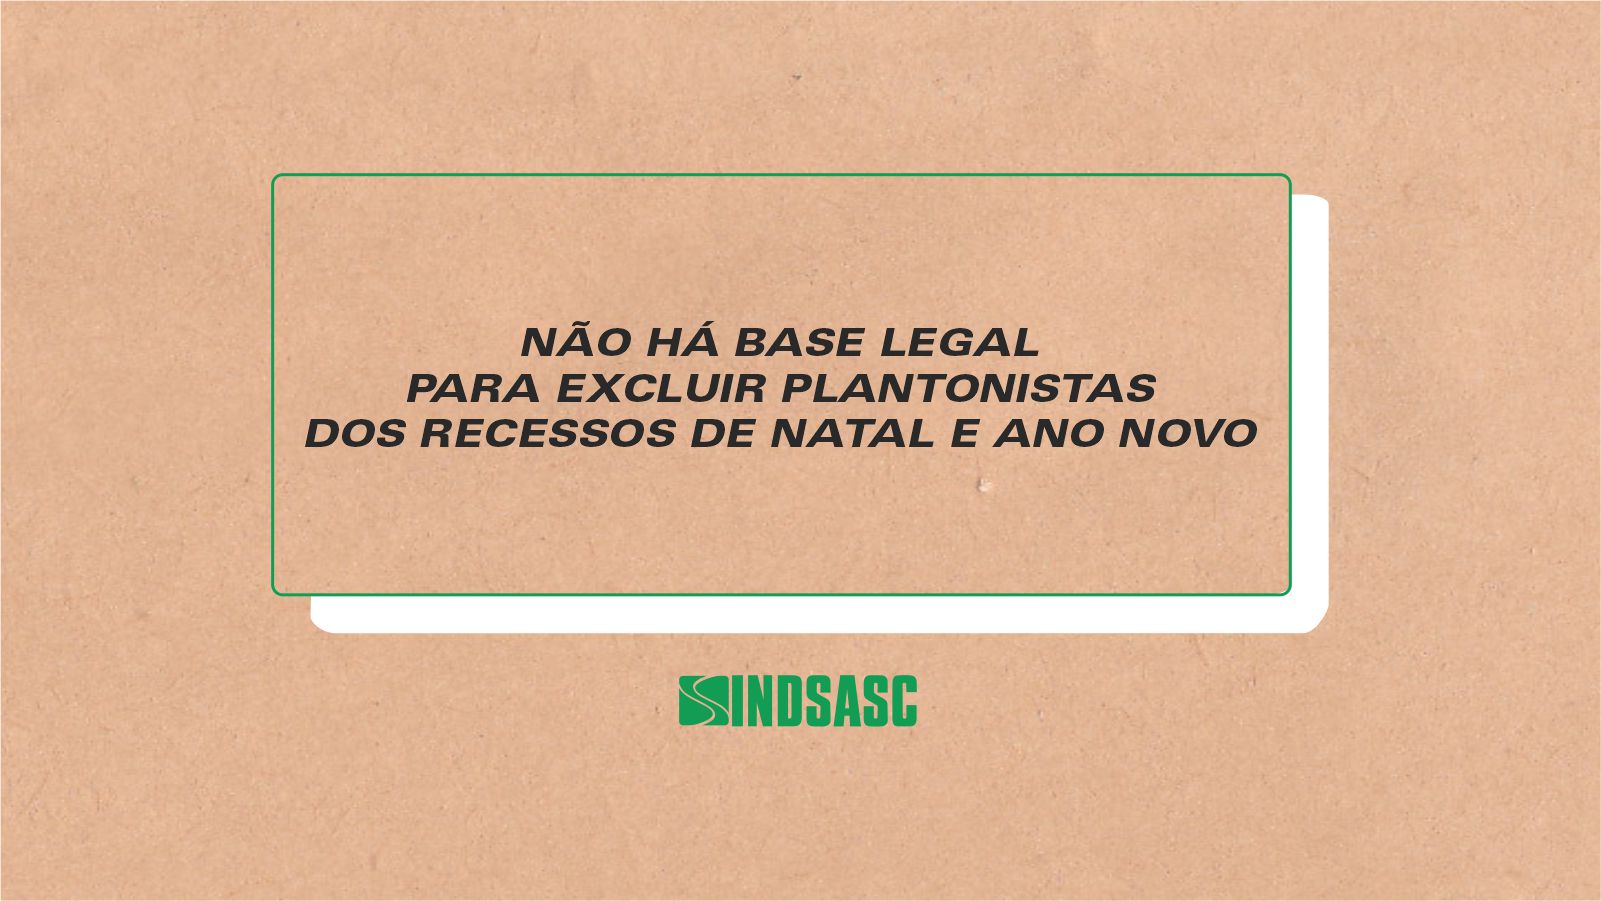 NÃO HÁ BASE LEGAL PARA EXCLUIR PLANTONISTAS DOS RECESSOS DE NATAL E ANO NOVO